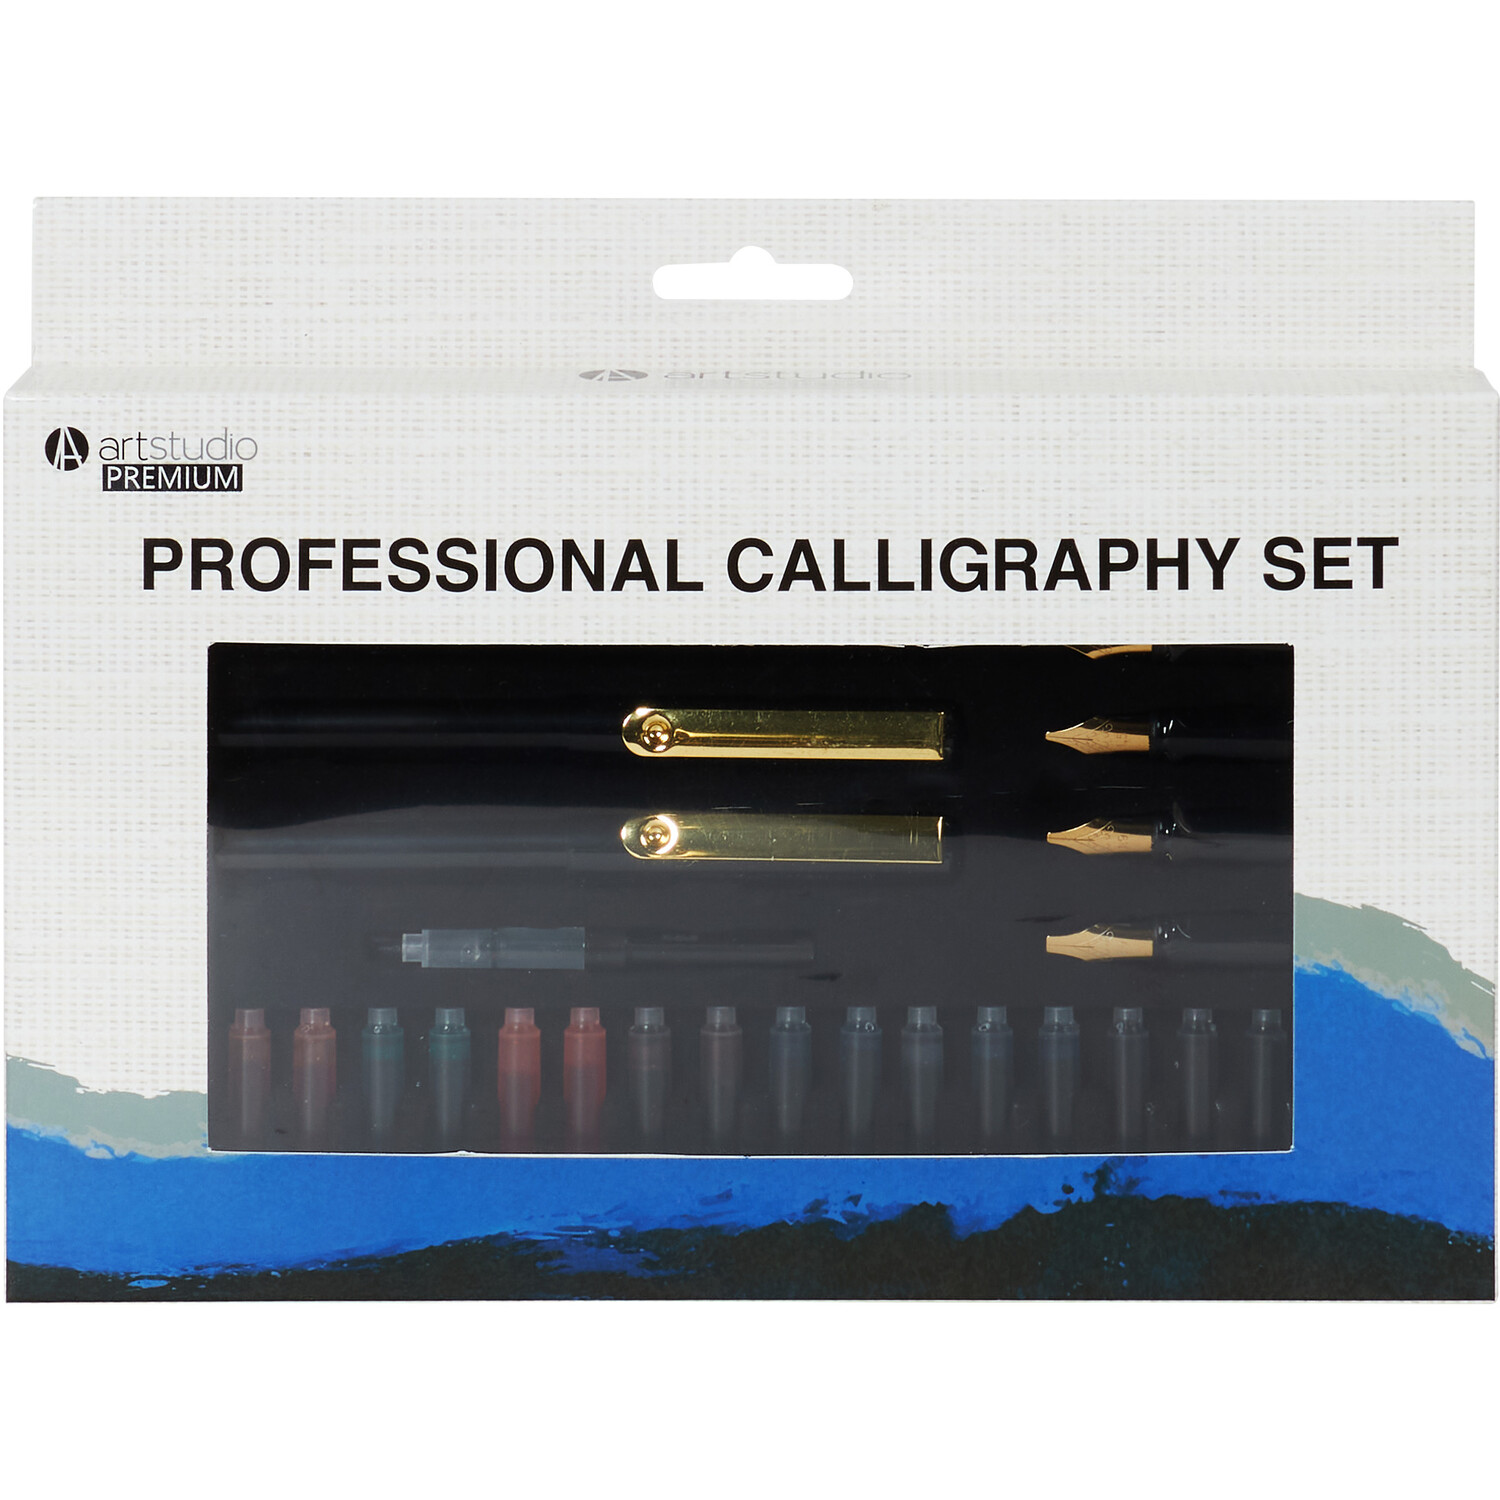 Art Studio Premium Professional Calligraphy Set Image 1